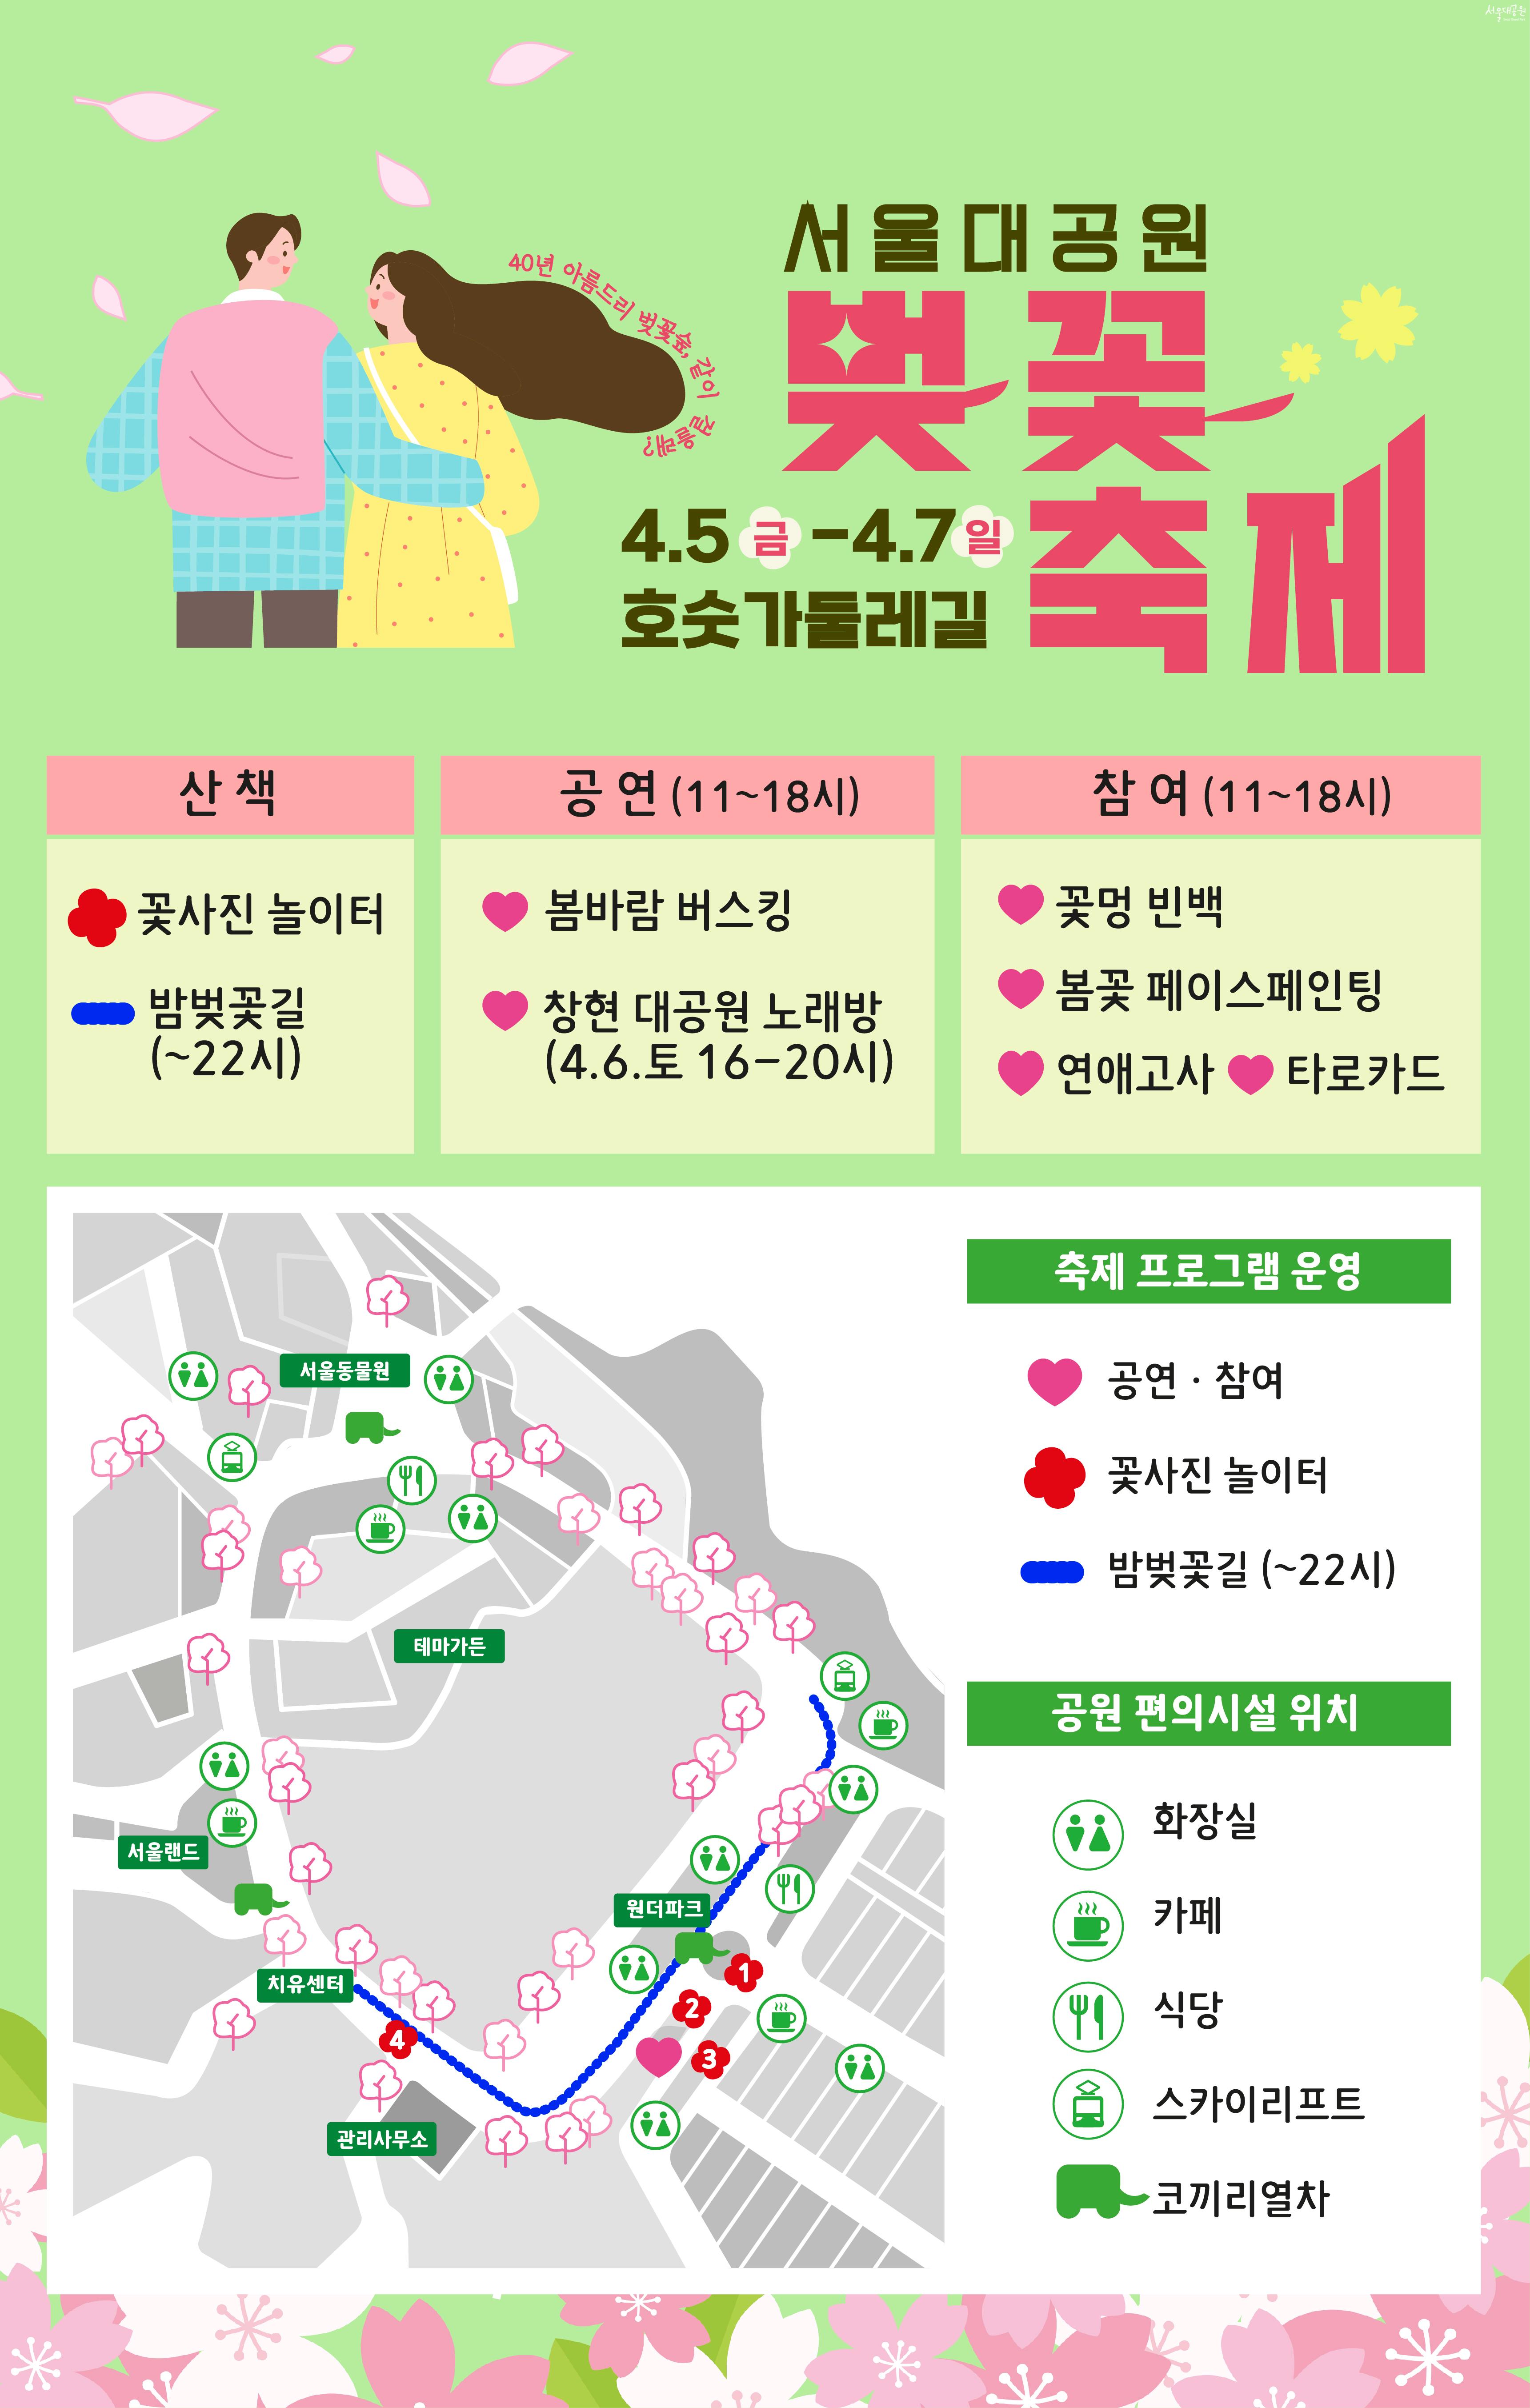 서울대공원 벚꽃 축제 4.5 금 -4.7일 호숫가둘레길 축제 프로그램